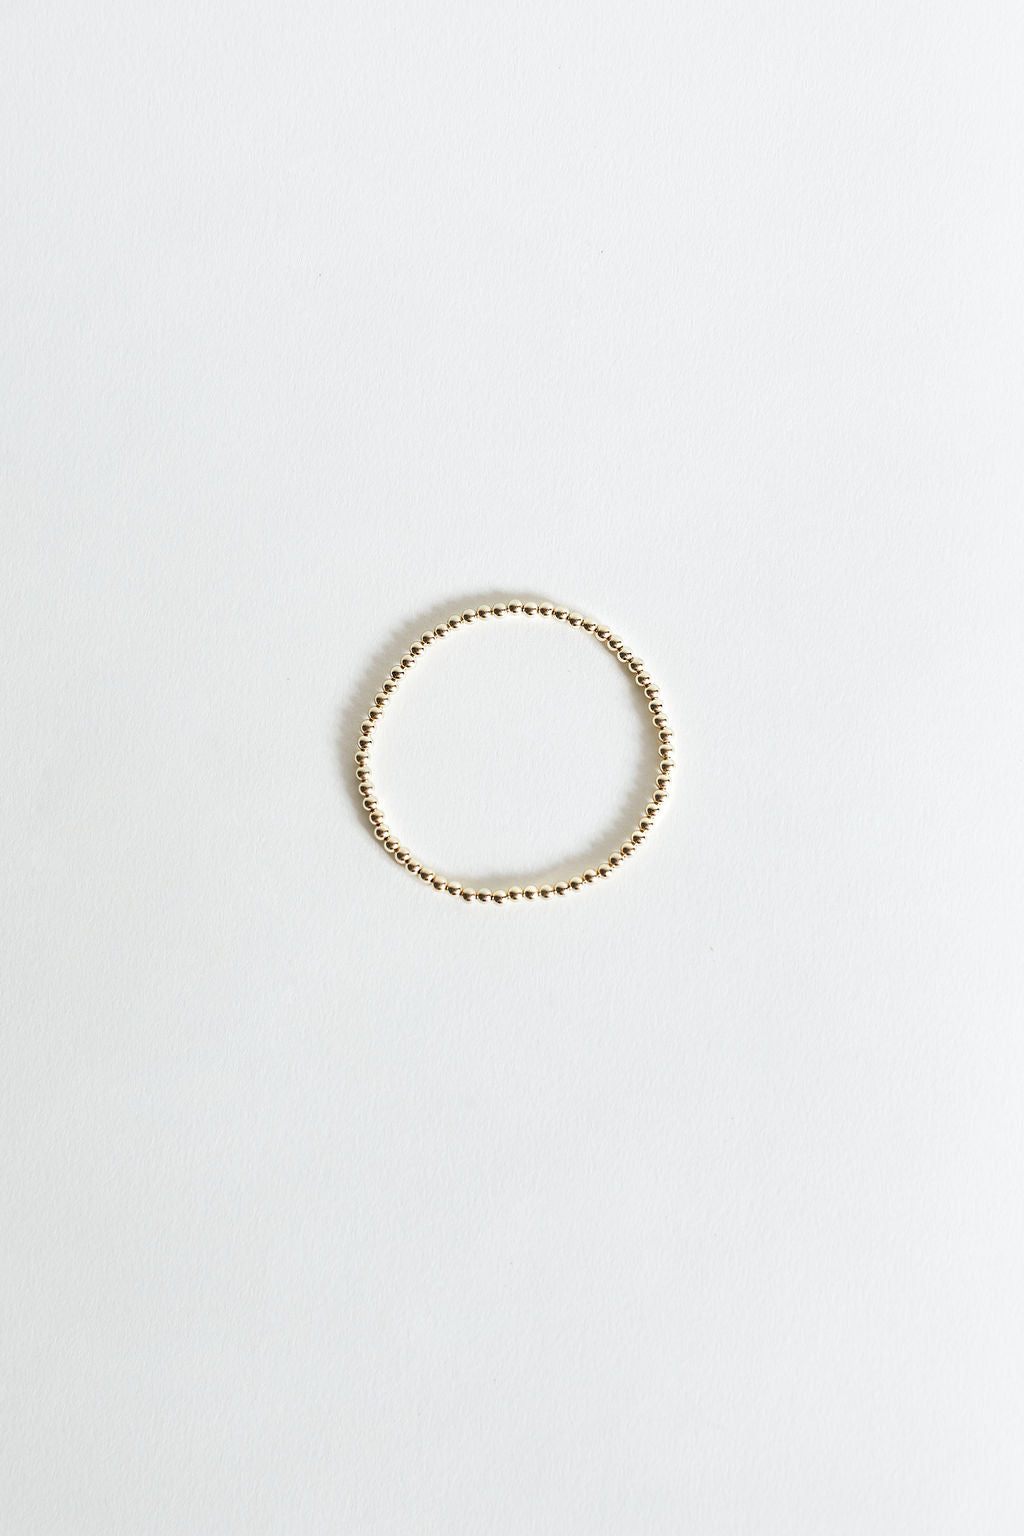 Nala Gold-Filled Beaded Bracelet - Medium